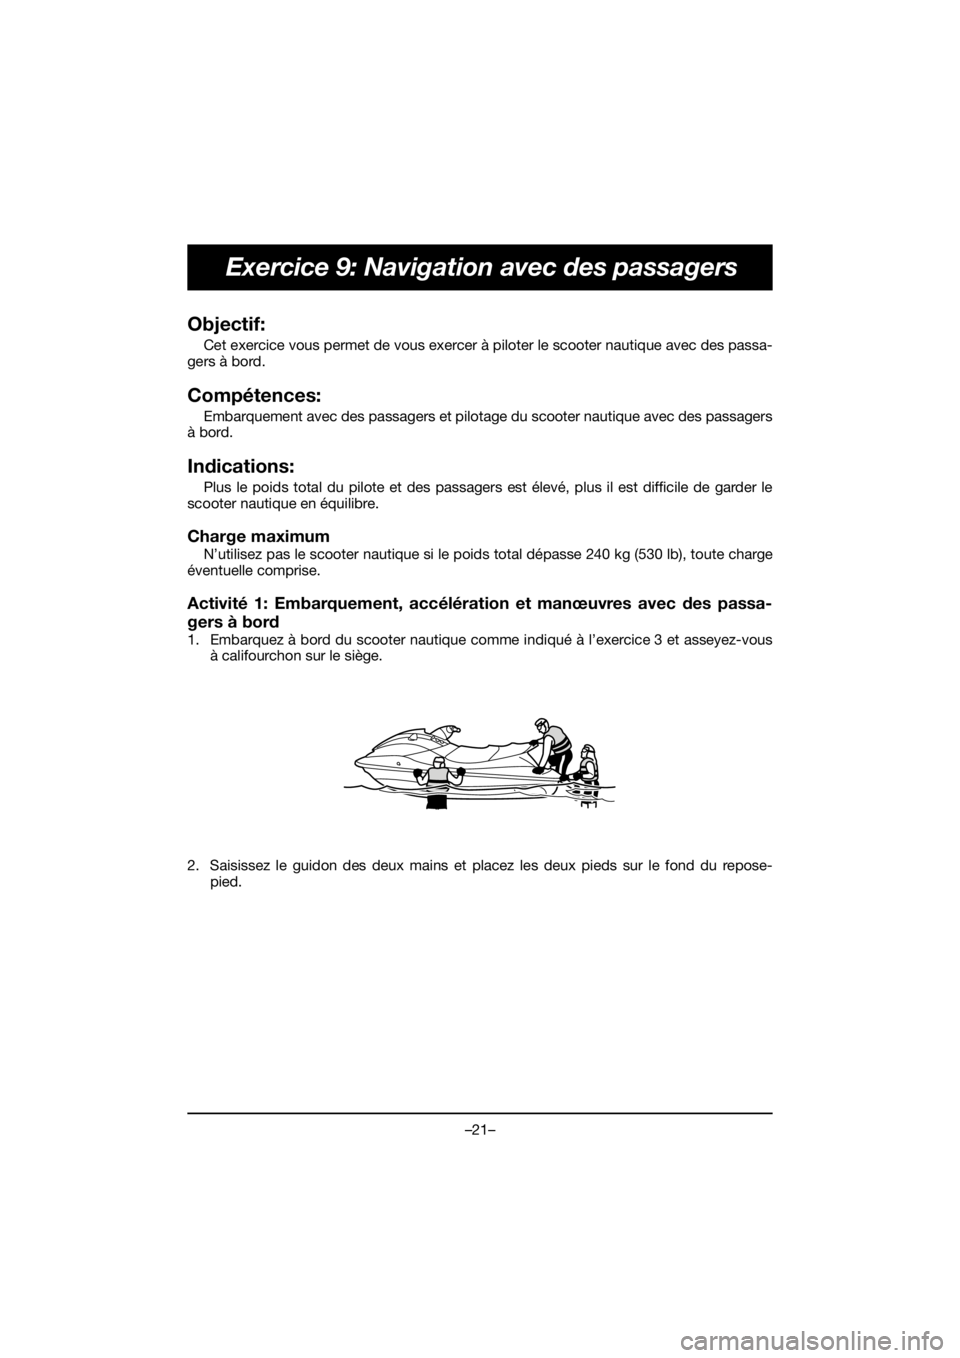 YAMAHA GP1800R SVHO 2020  Bruksanvisningar (in Swedish) –21–
Exercice 9: Navigation avec des passagers
Objectif: 
Cet exercice vous permet de vous exercer à piloter le scooter nautique avec des passa-
gers à bord.
Compétences: 
Embarquement avec des